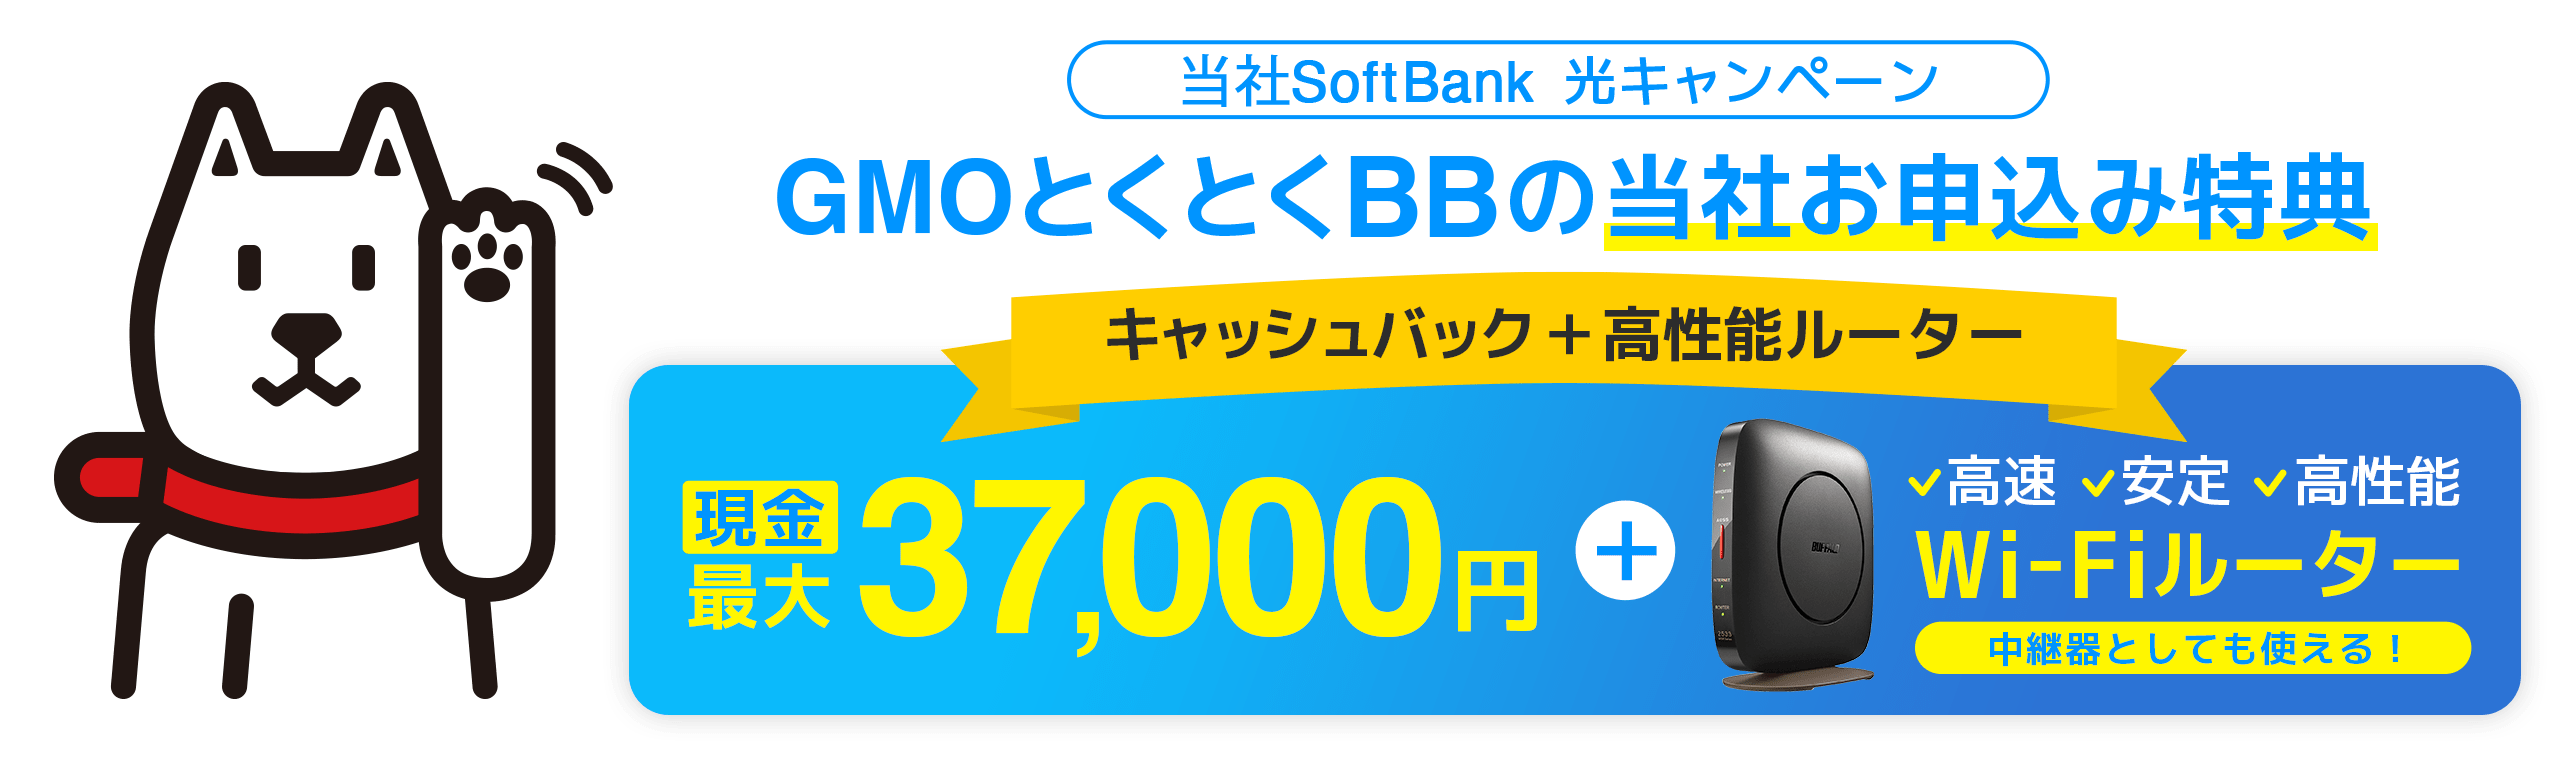 GMOとくとくBB経由SoftBank光申込ページ